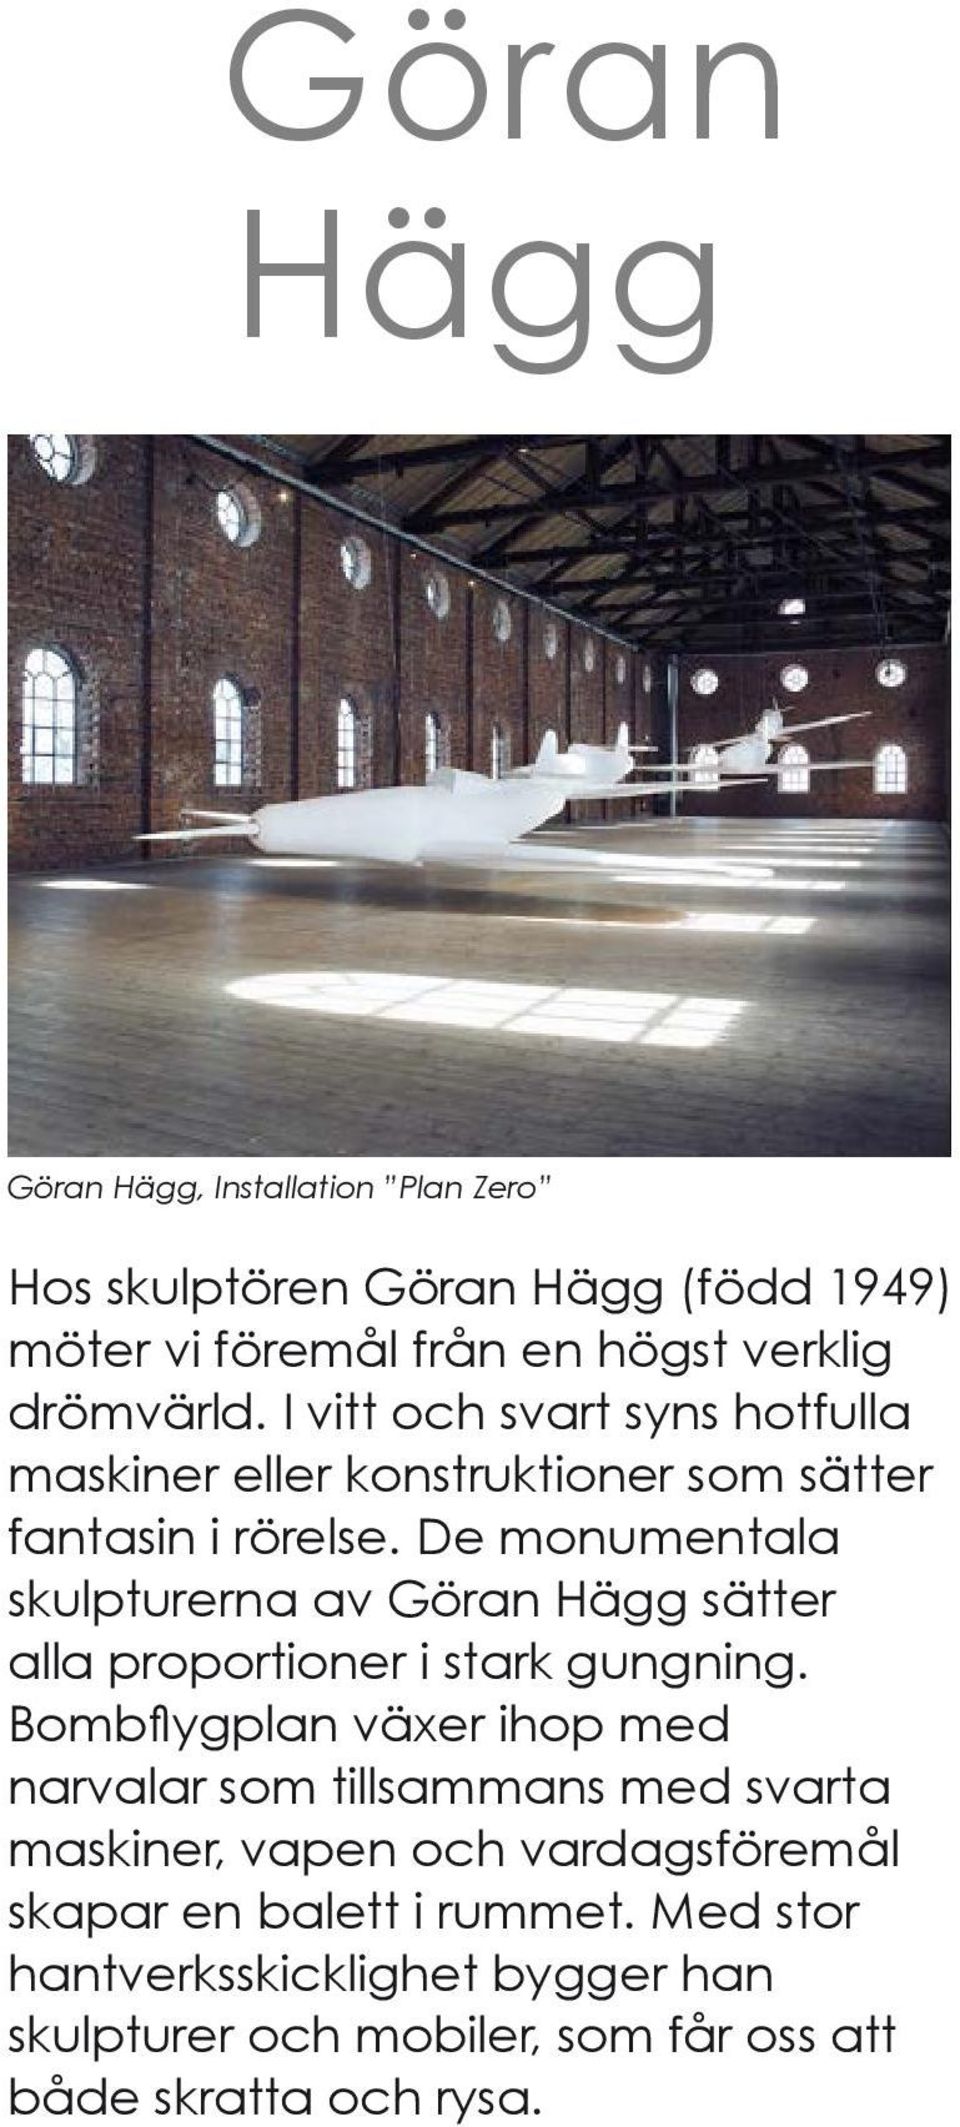 De monumentala skulpturerna av Göran Hägg sätter alla proportioner i stark gungning.